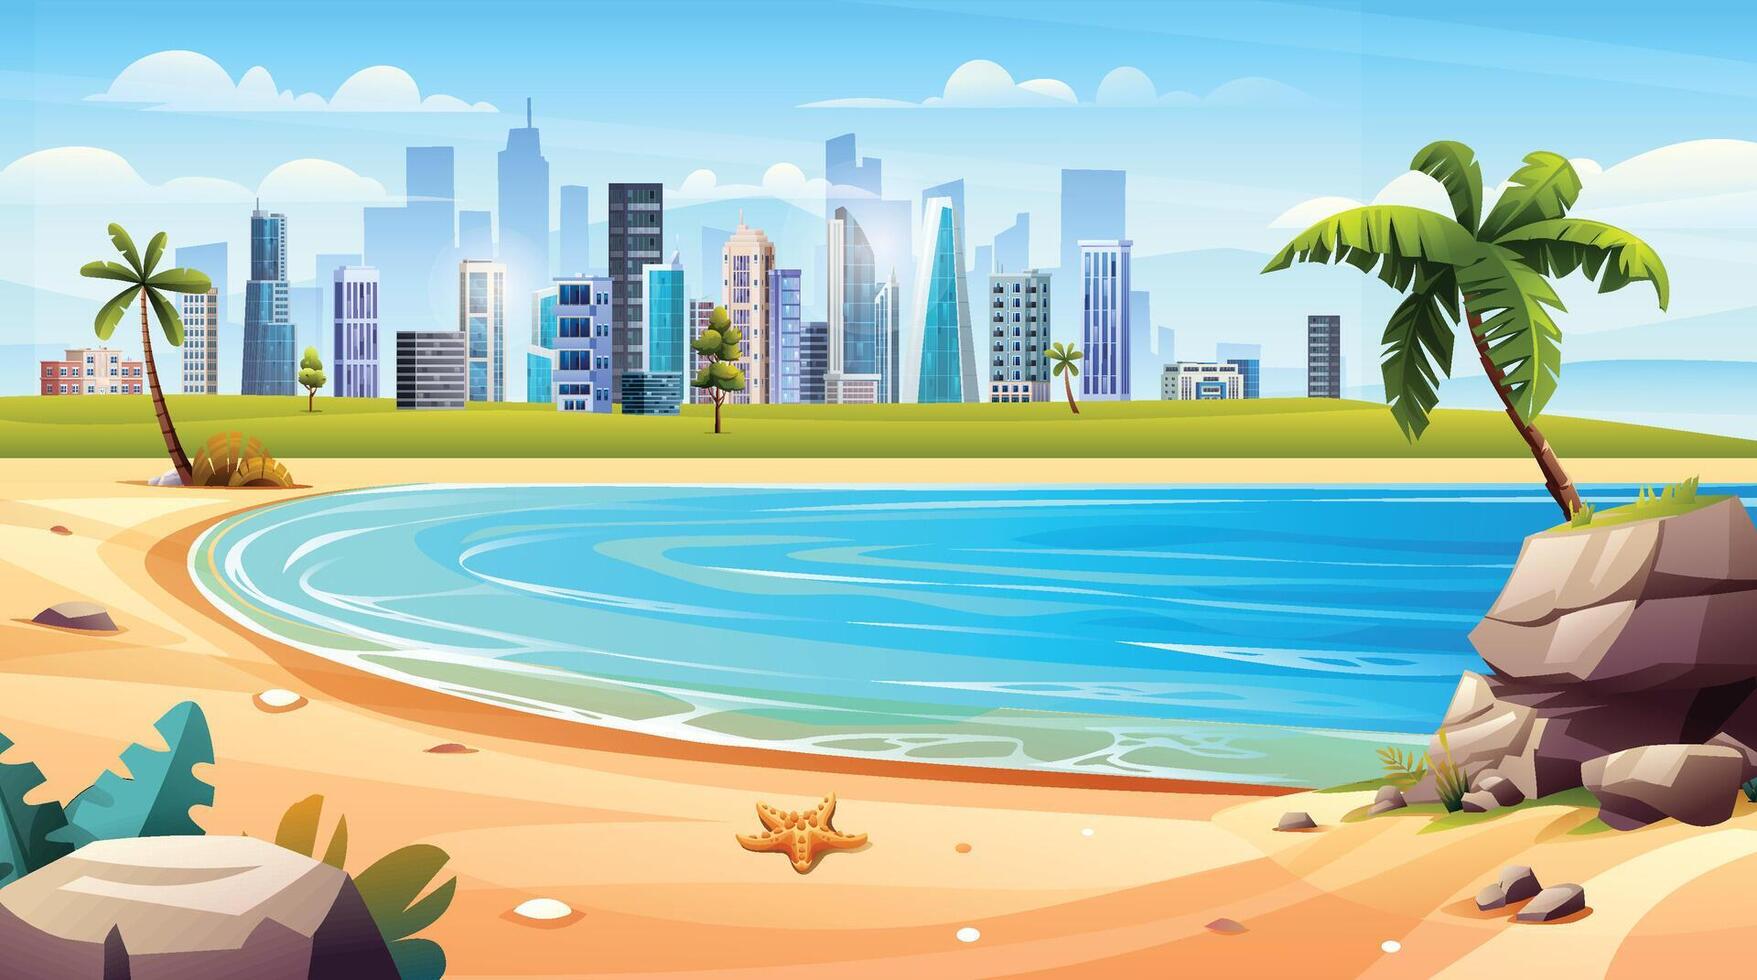 océan baie panorama avec paume des arbres sur le rivage et paysage urbain vue concept. tropical plage vacances dessin animé paysage illustration vecteur